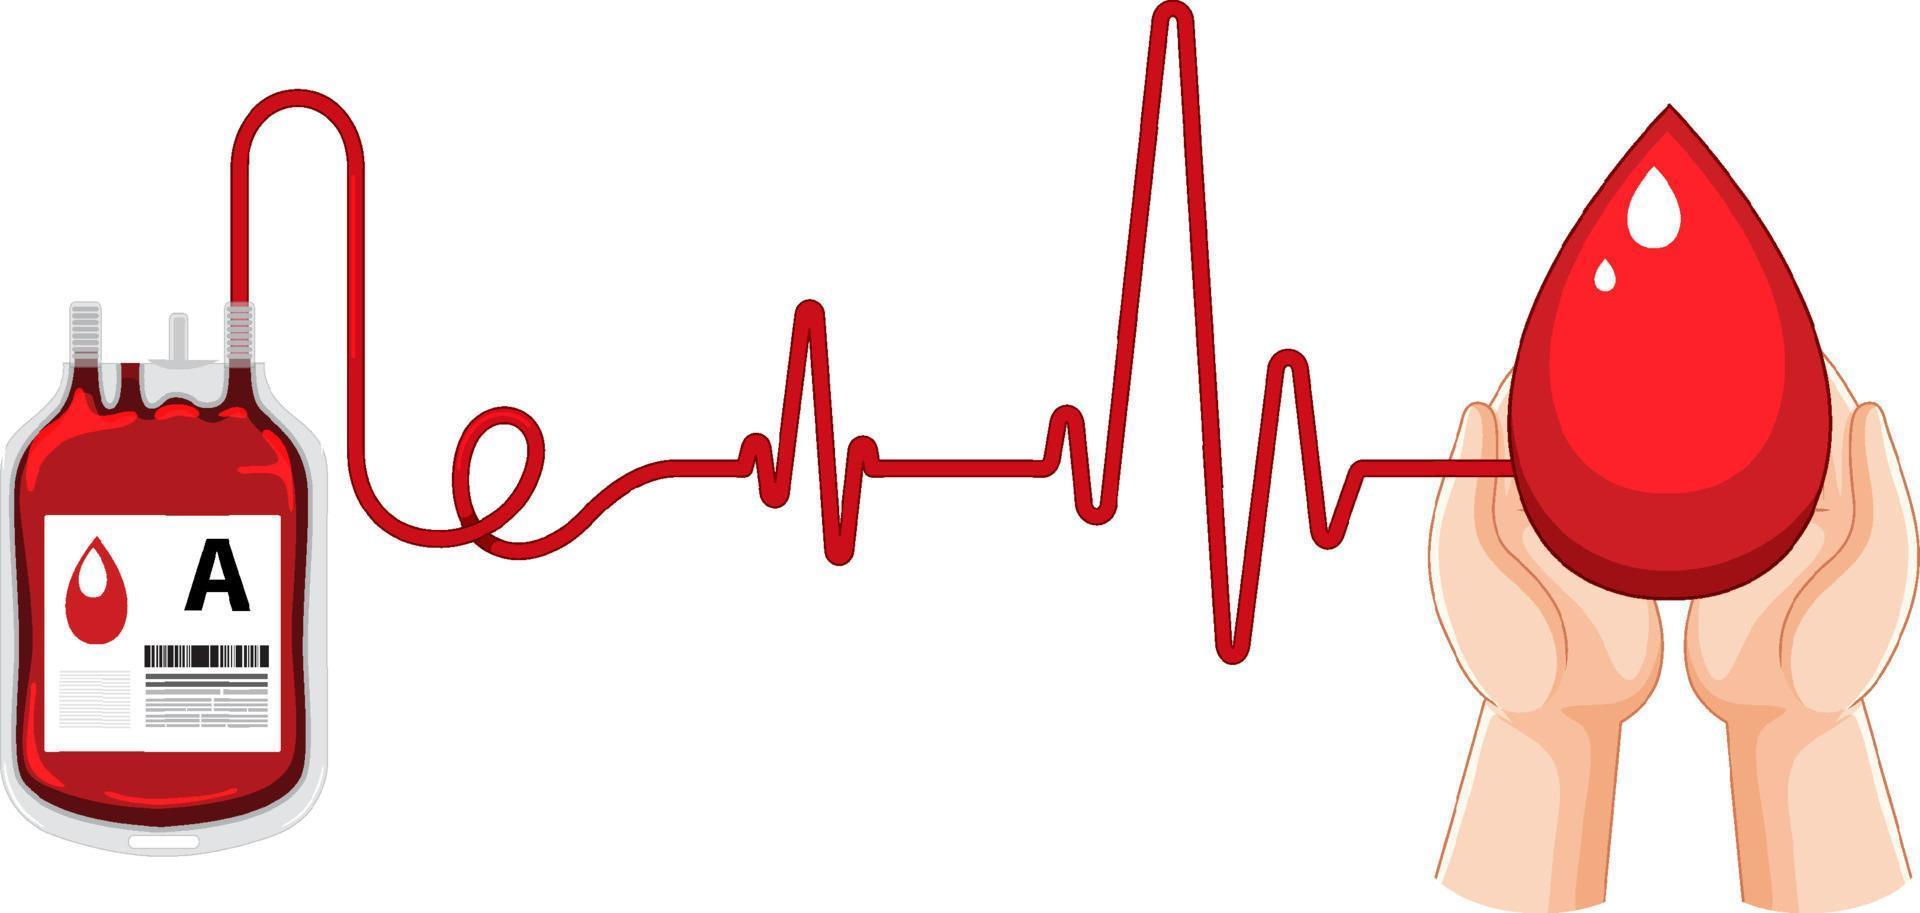 donación de sangre humana y frecuencia cardíaca sobre fondo blanco vector